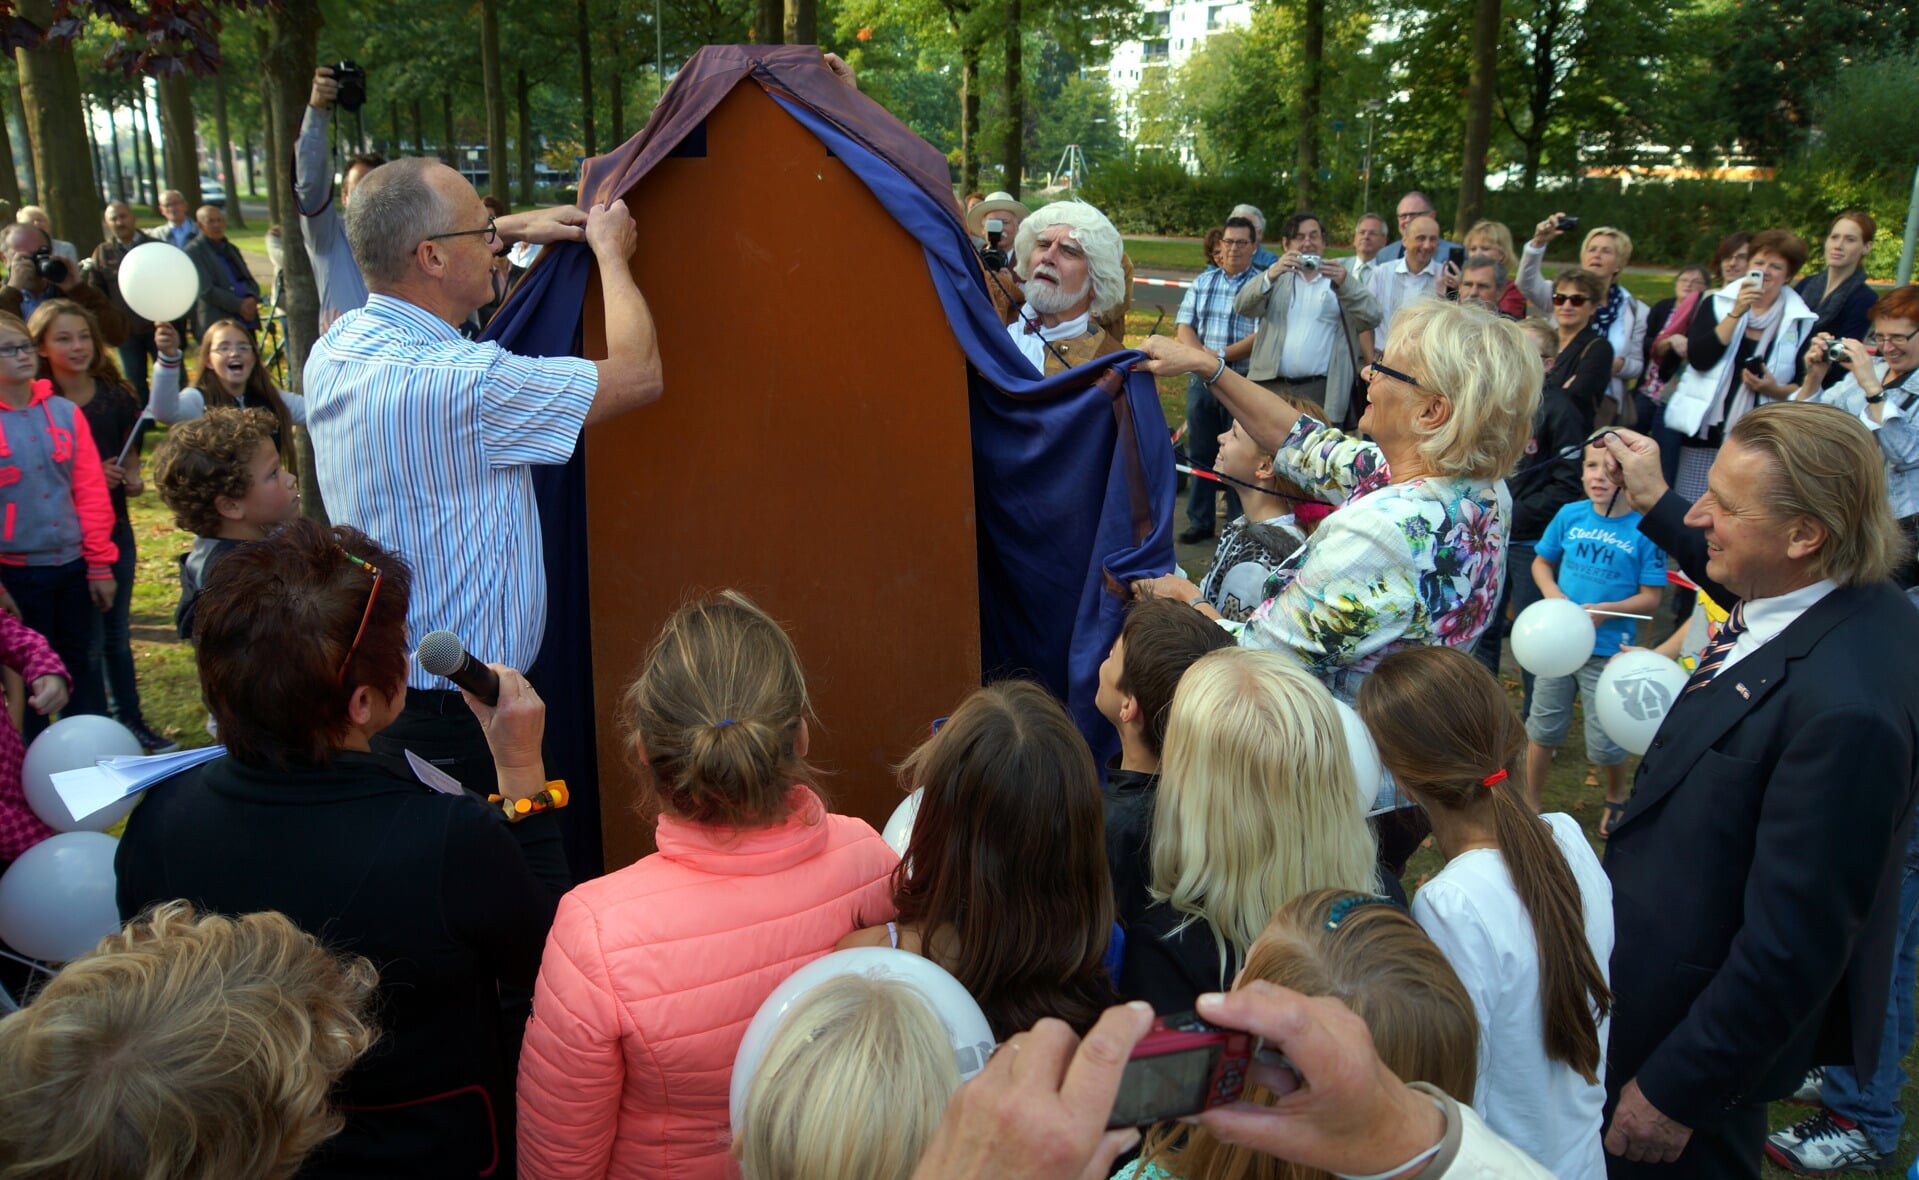 De Kunststichting Boxtel was sedert 1996 betrokken bij de plaatsing van veel openbare kunstwerken, waaronder het beeld van Marten Groen dat herinnert aan Hendrik Verhees, dat geplaatst werd aan de Hendrik Verheeslaan. (Foto: Albert Stolwijk).